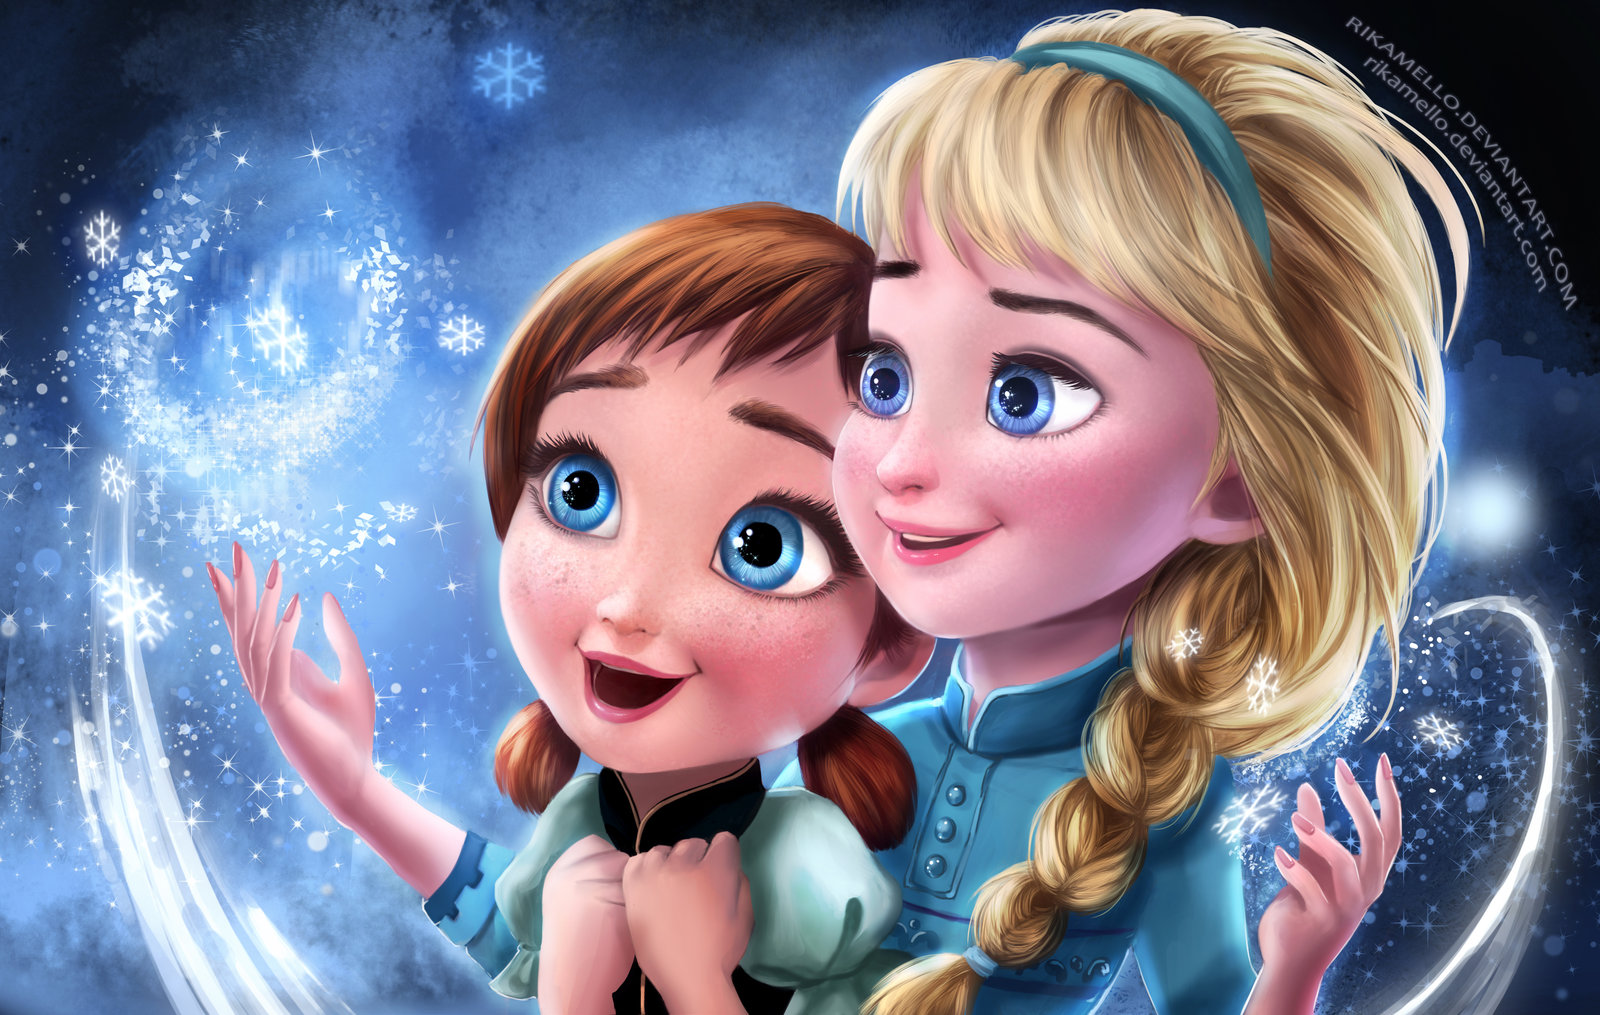 Frozen Elsa Anna Digital Fan Art Wallpapers